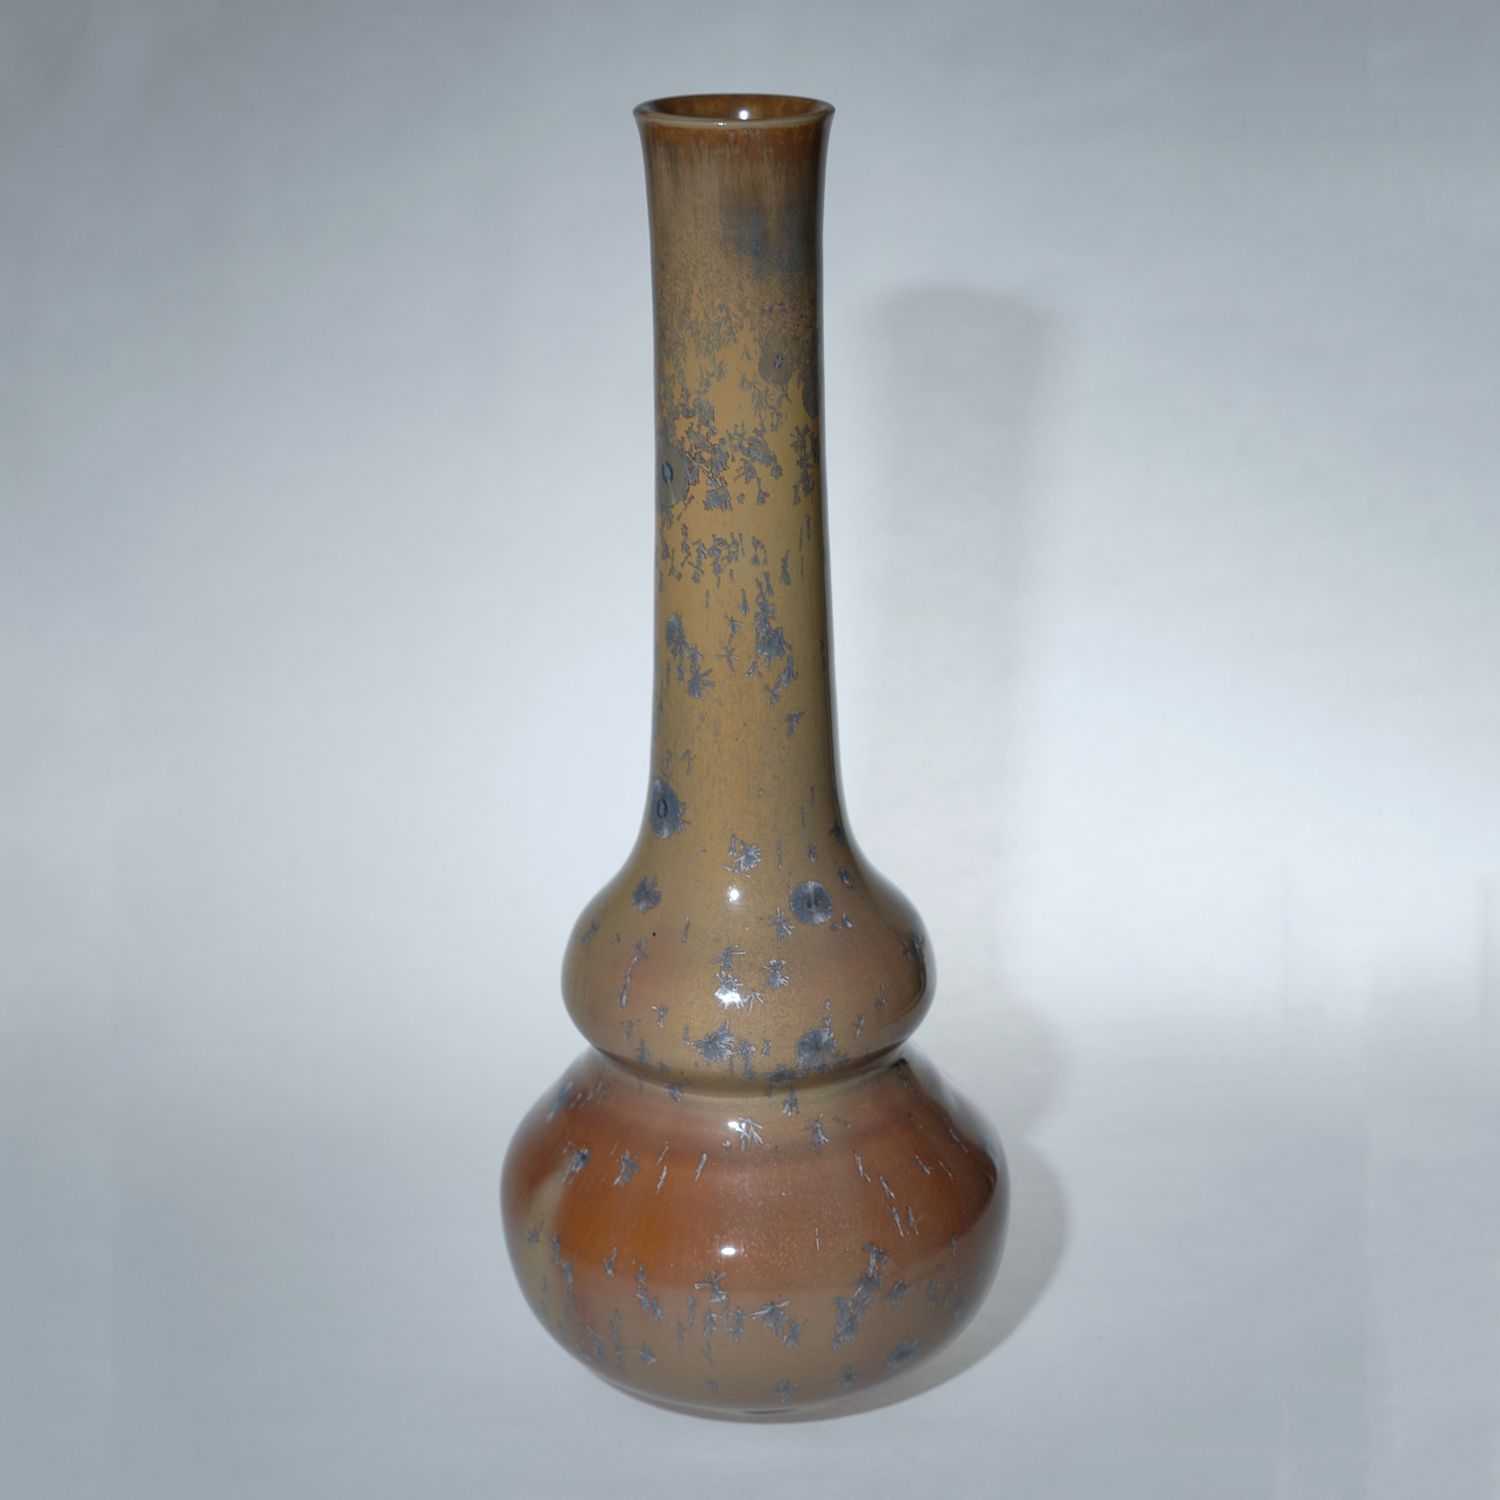 Yumiko Katsuya: Gourd Vase – Brown Product Image 1 of 1